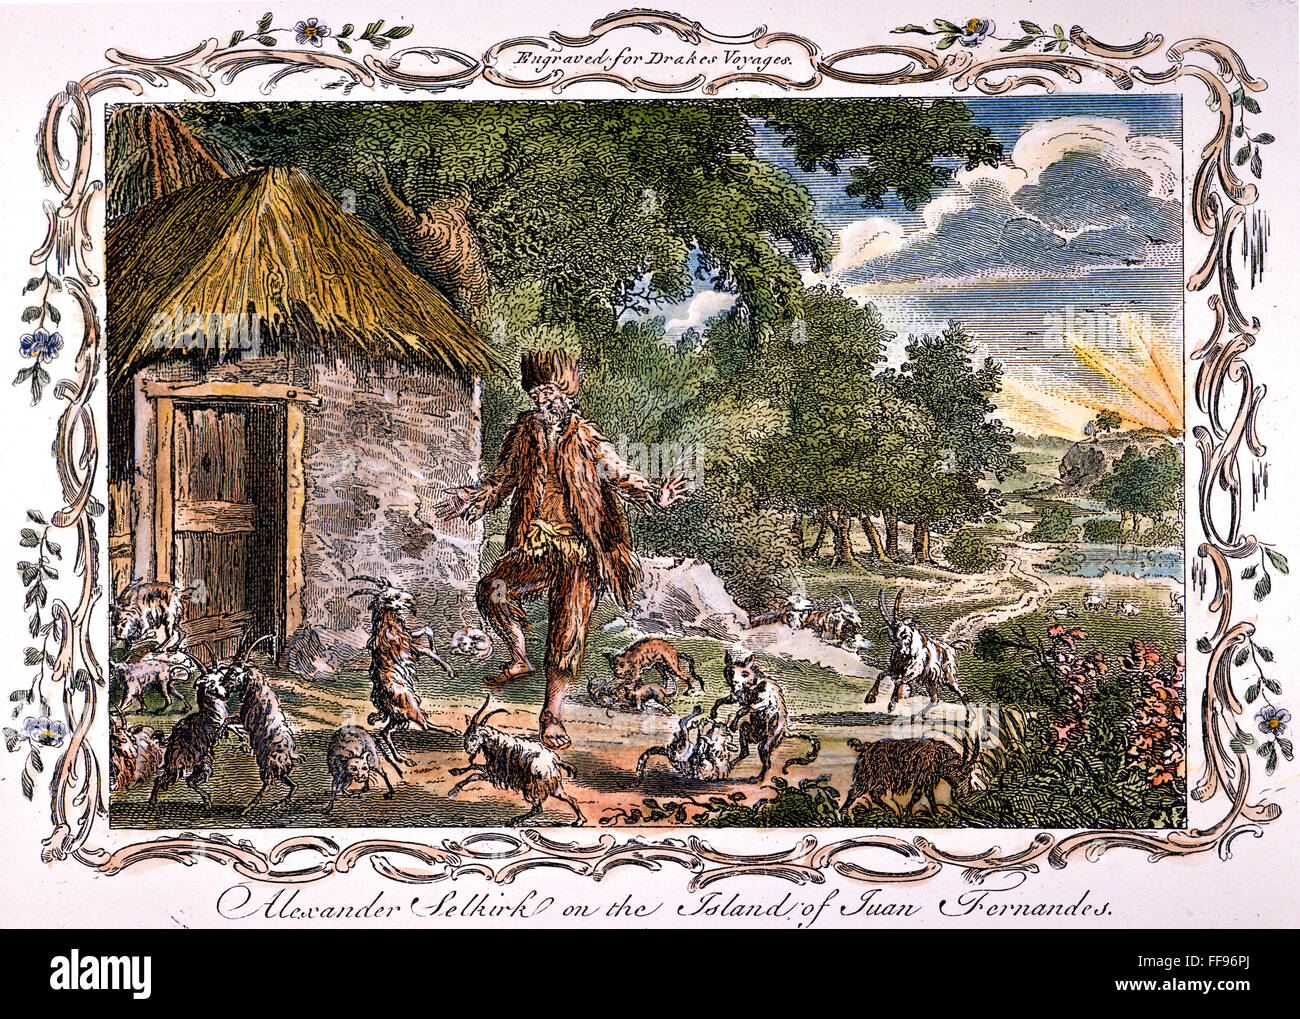 ALEXANDER SELKIRK /n(1676-1721). Le marin écossais sur lequel Daniel Defoe fonde son caractère de Robinson Crusoé, sur Mas-a-Tierra où il vivait seul à partir de 1704-1709. Gravure anglaise, 18ème siècle. Banque D'Images